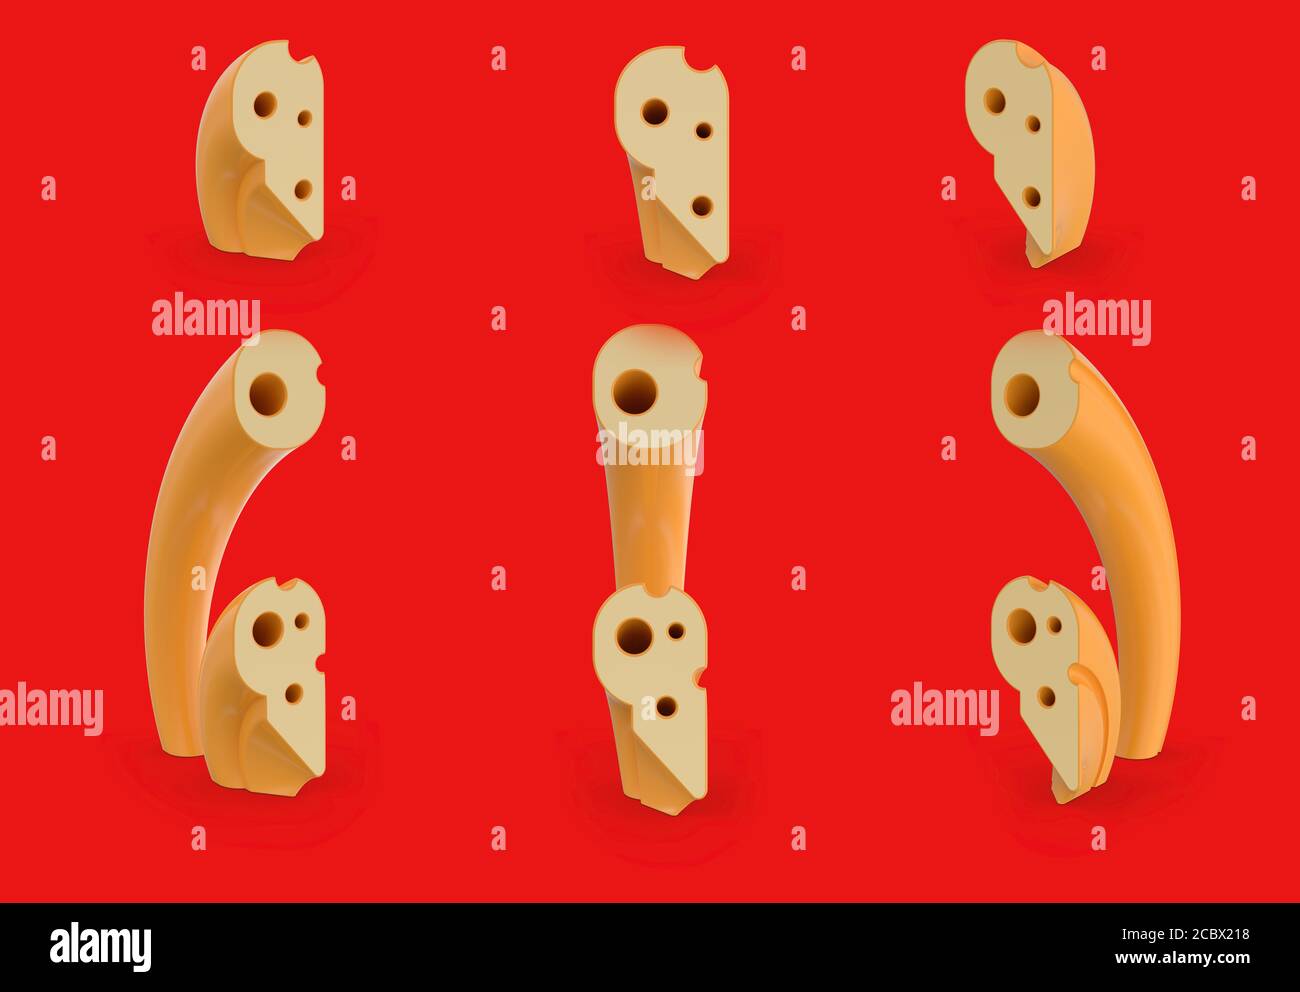 Symbole point et virgule. Alphabet et police de fromage. Ensemble de trois points de vue sur le rouge. Rendu 3D Banque D'Images